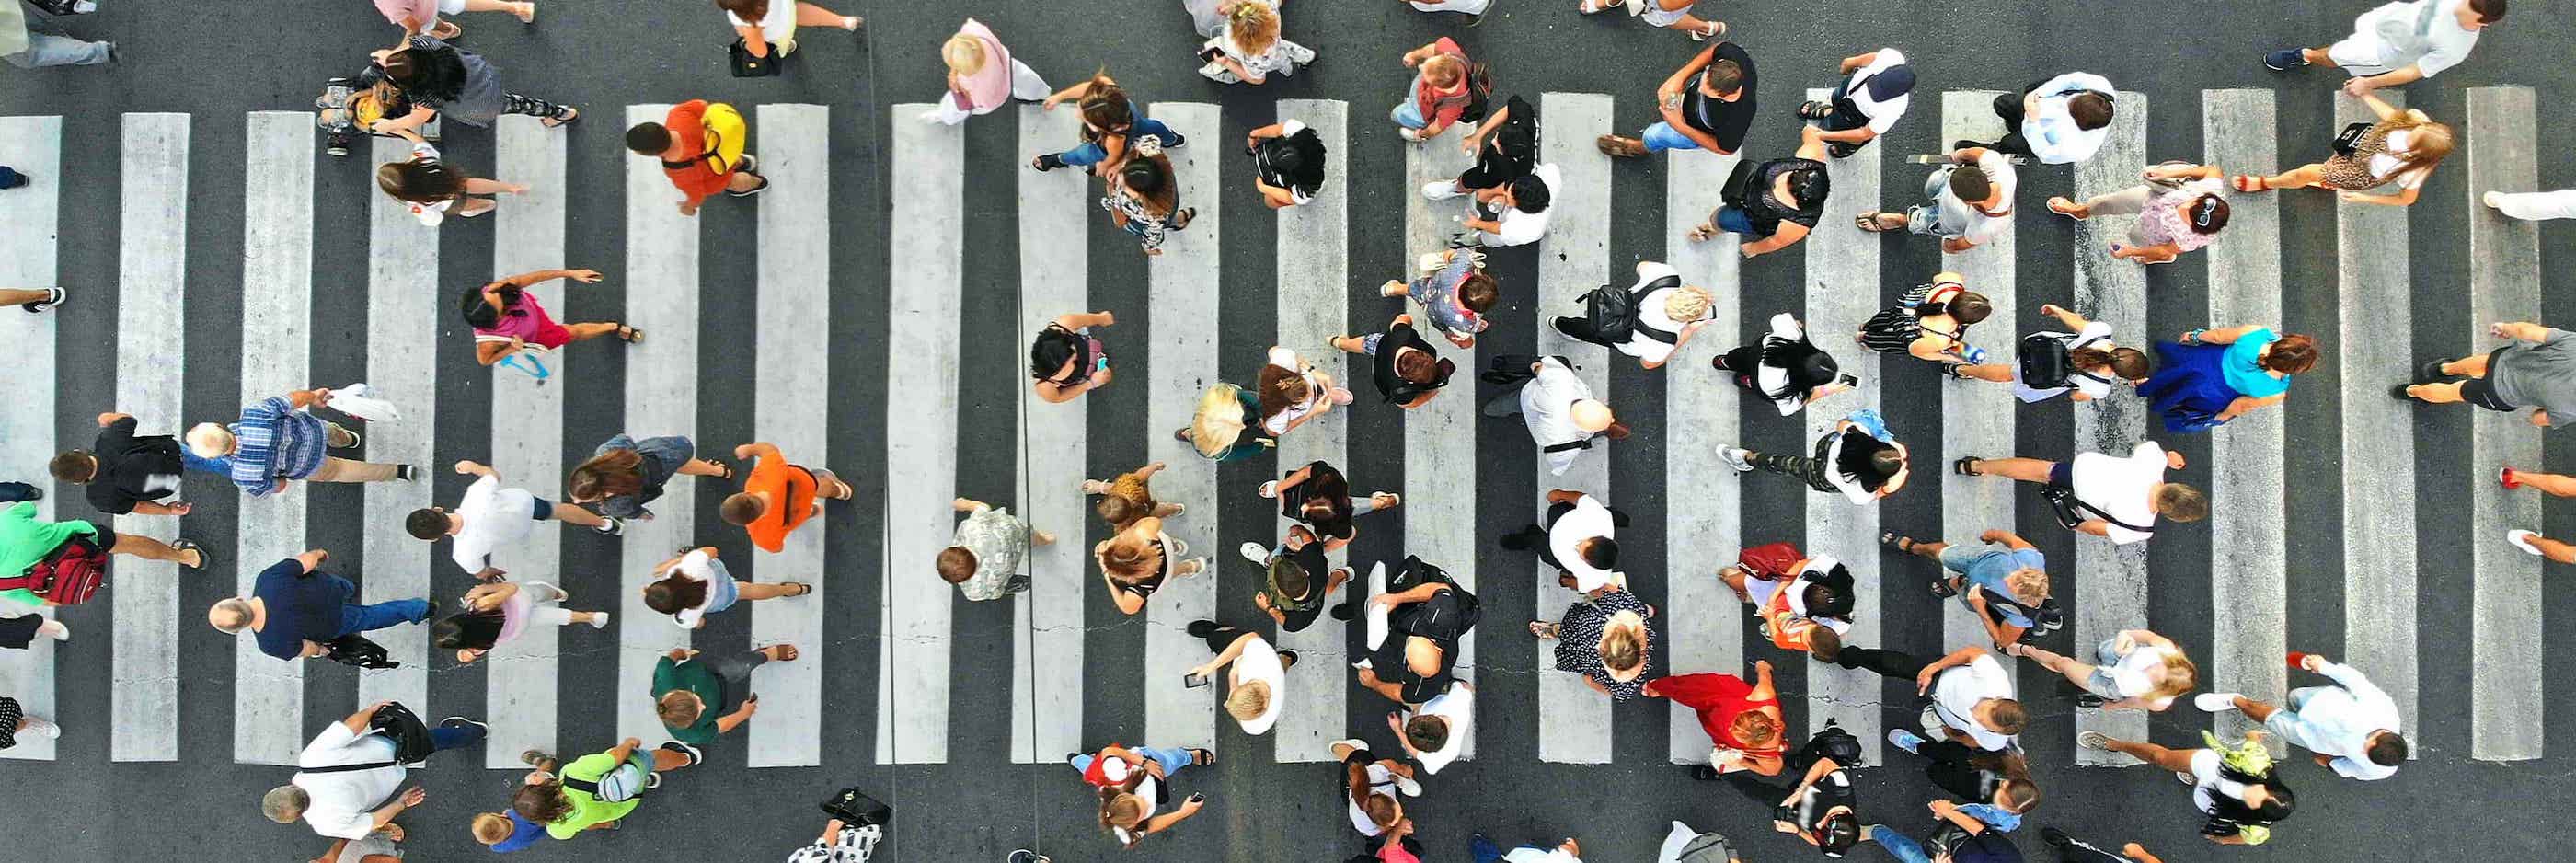 A crowded crosswalk